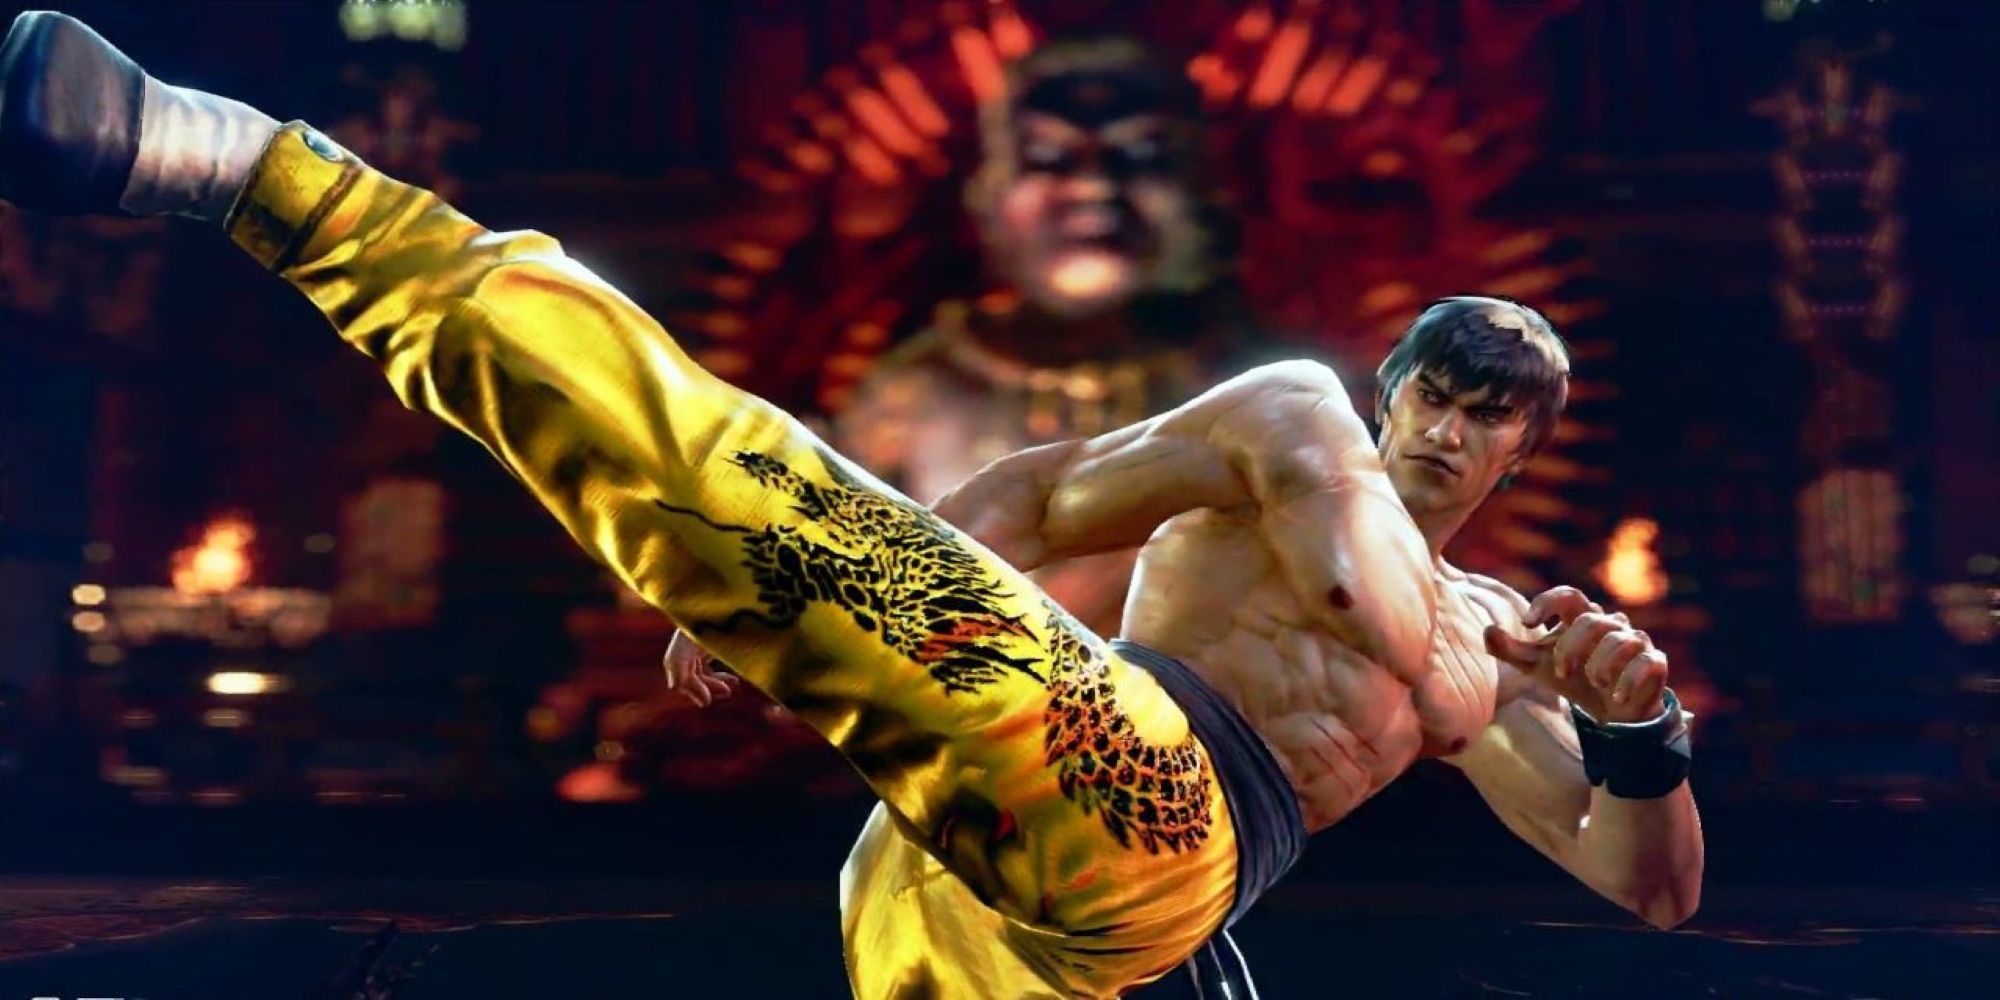 Marshall Law launches a swift kick in Mishima Dojo in Tekken 7.